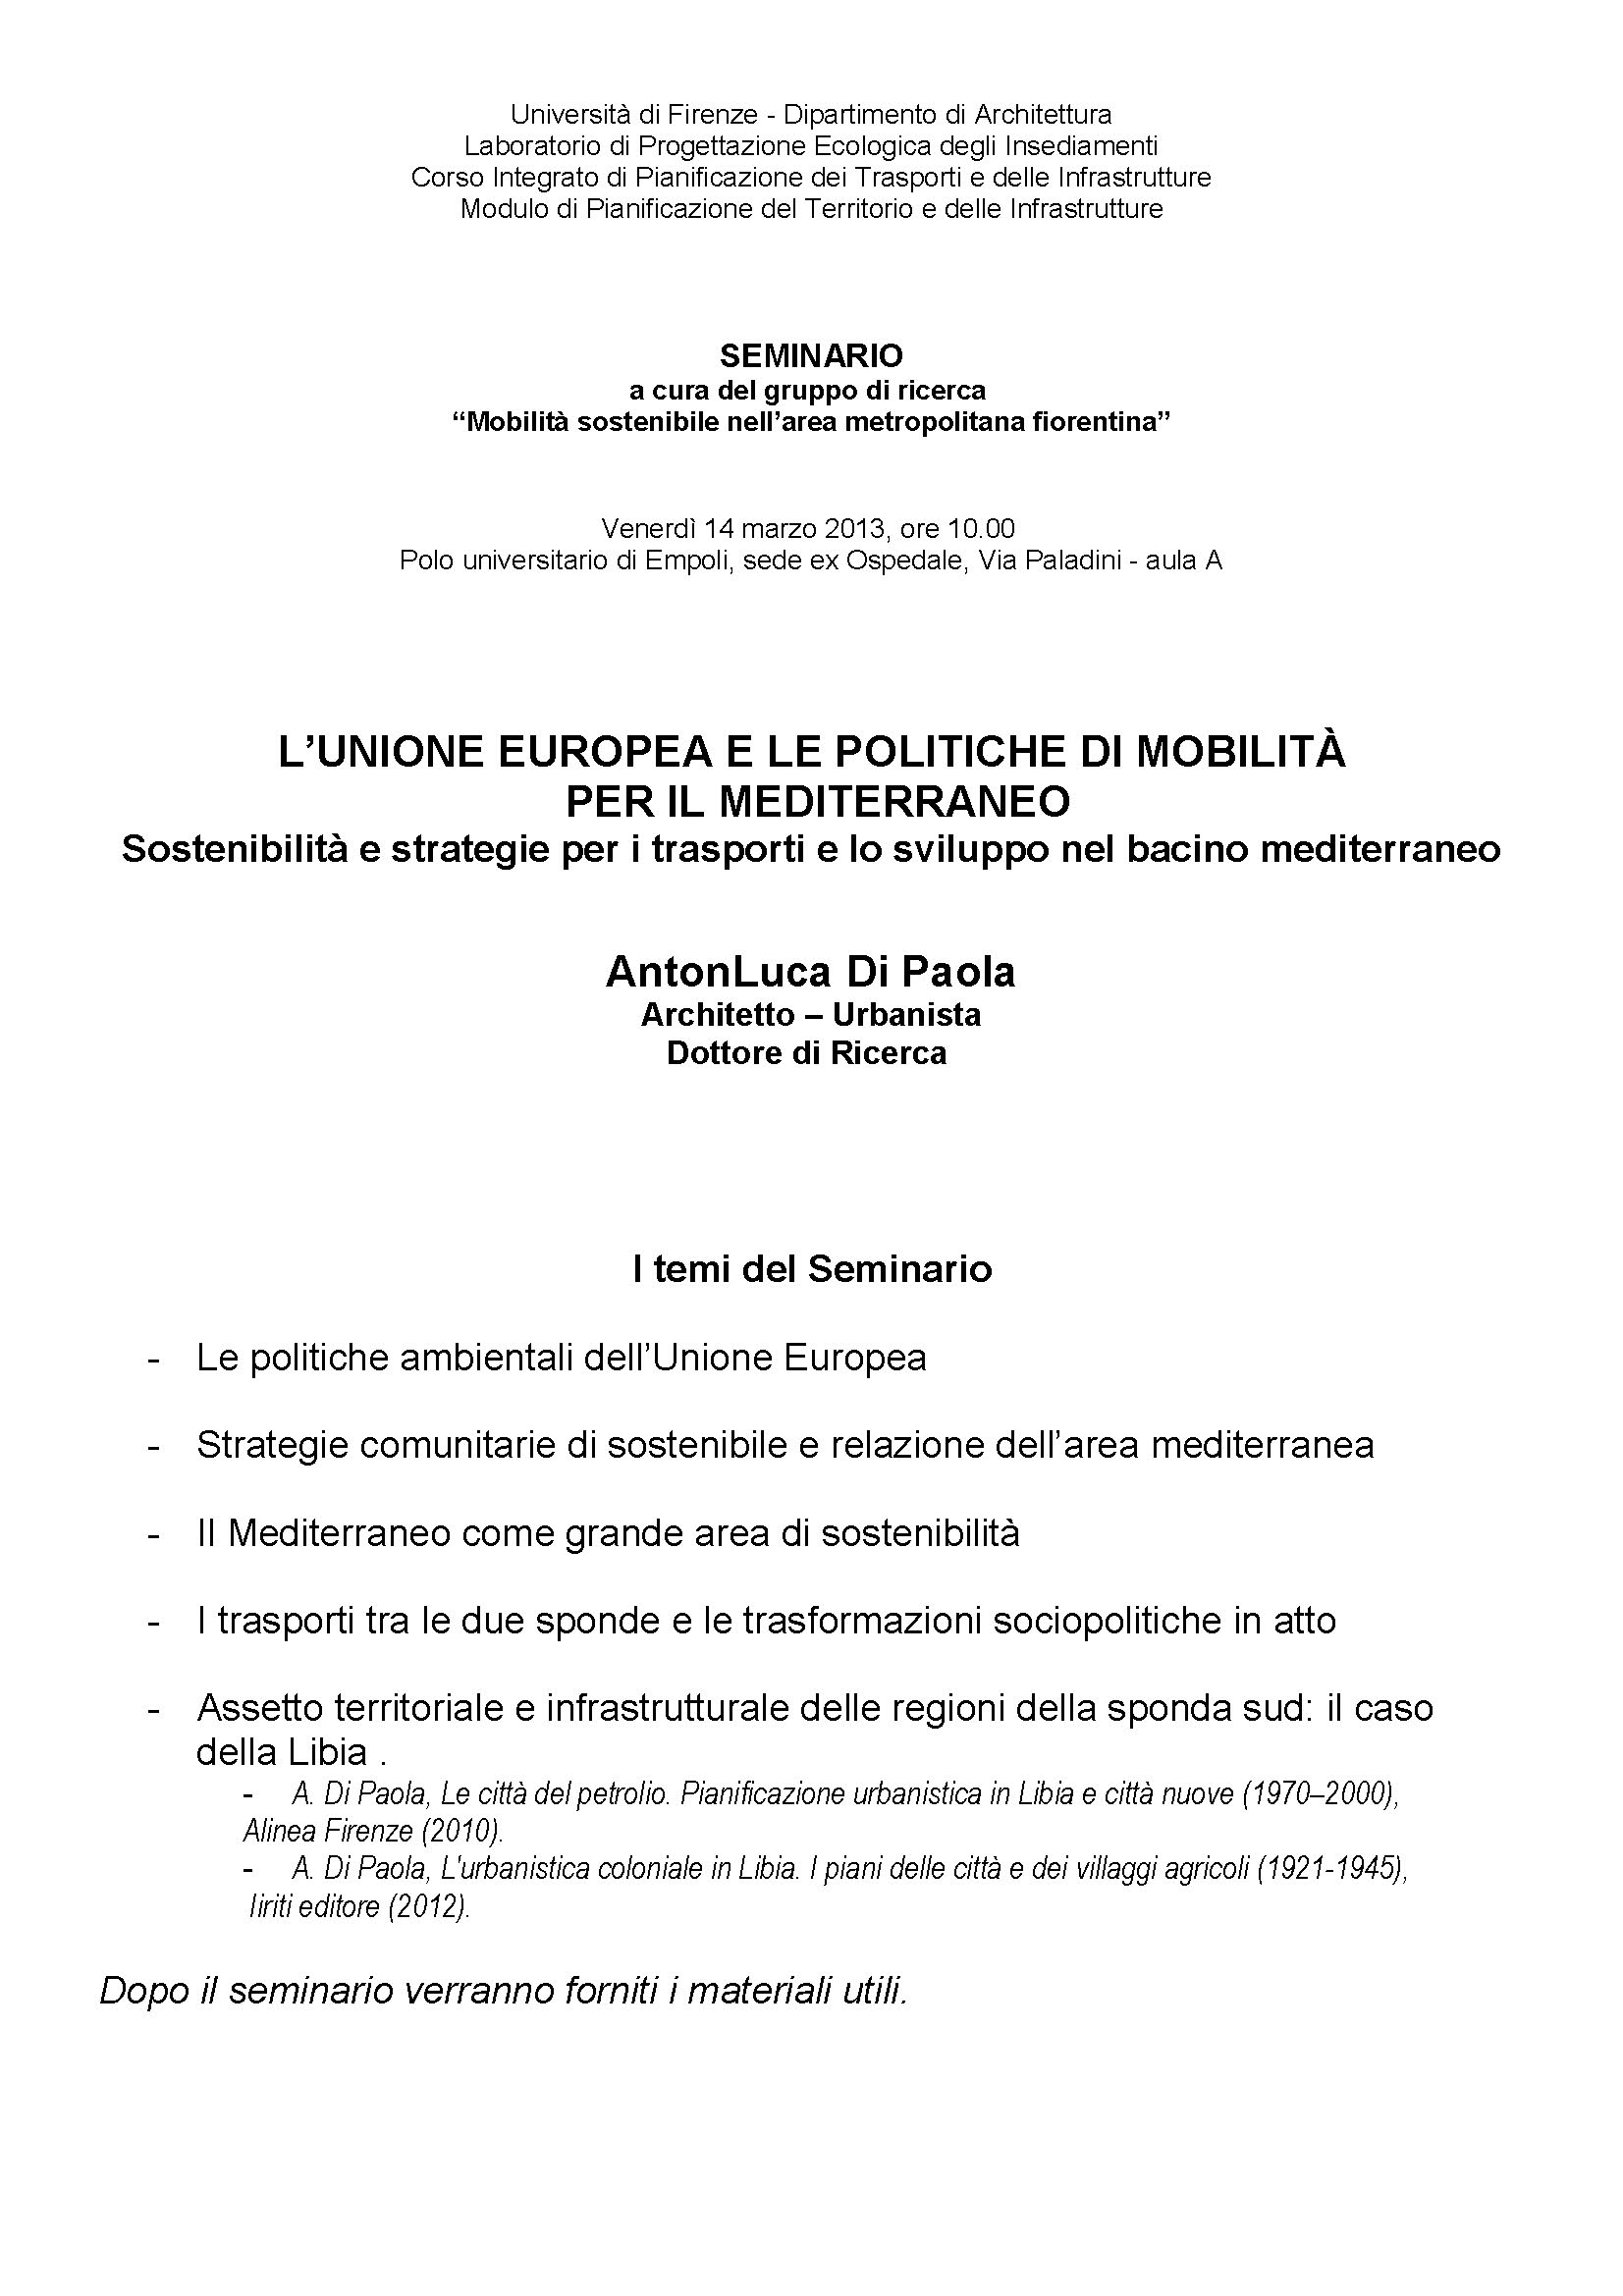 L’unione europea e le politiche di mobilità per il mediterraneo